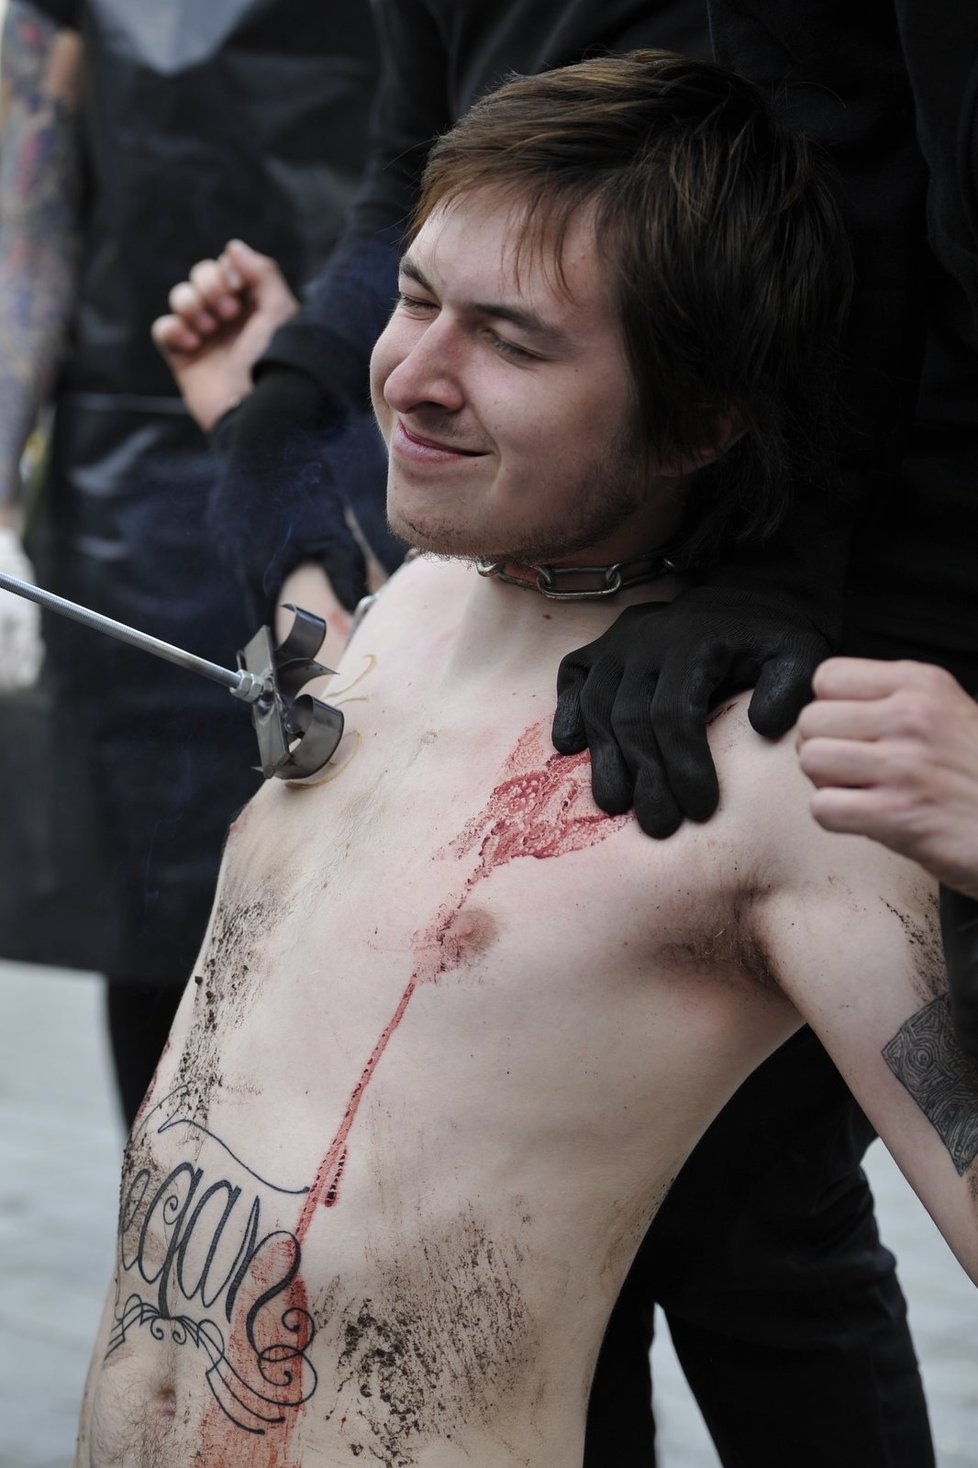 Asi deset aktivistů si 15. května v centru Brna nechalo rozžhaveným železem vypálit na tělo číslo 269. Protestovali tím proti údajnému utrpení hospodářských zvířat, které se týká zejména velkochovů.